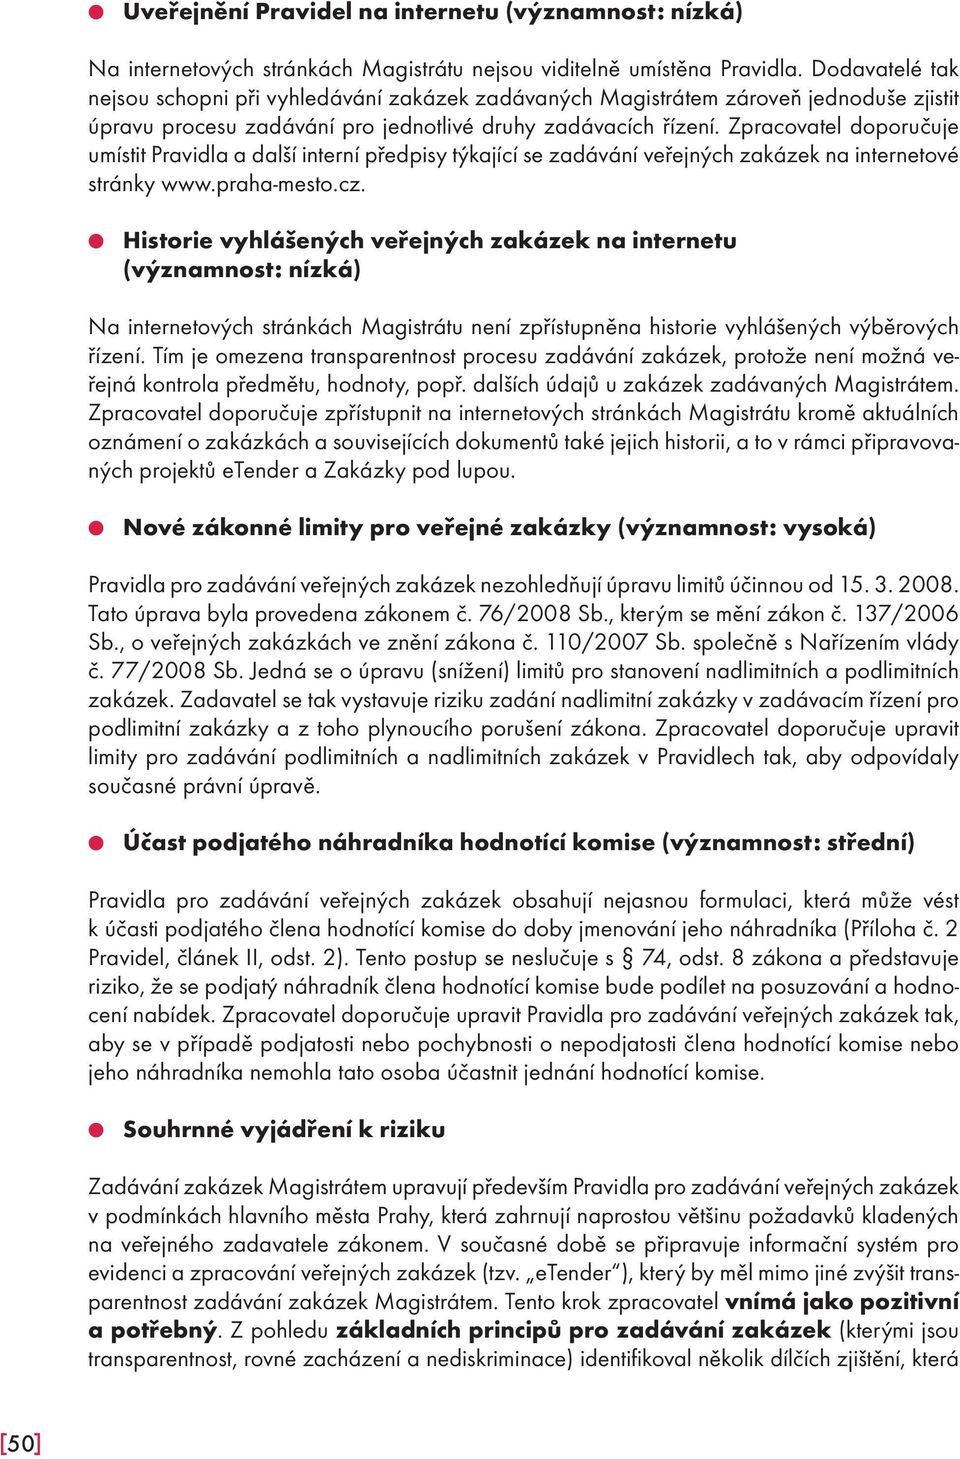 Zpracovatel doporučuje umístit Pravidla a další interní předpisy týkající se zadávání veřejných zakázek na internetové stránky www.praha-mesto.cz.